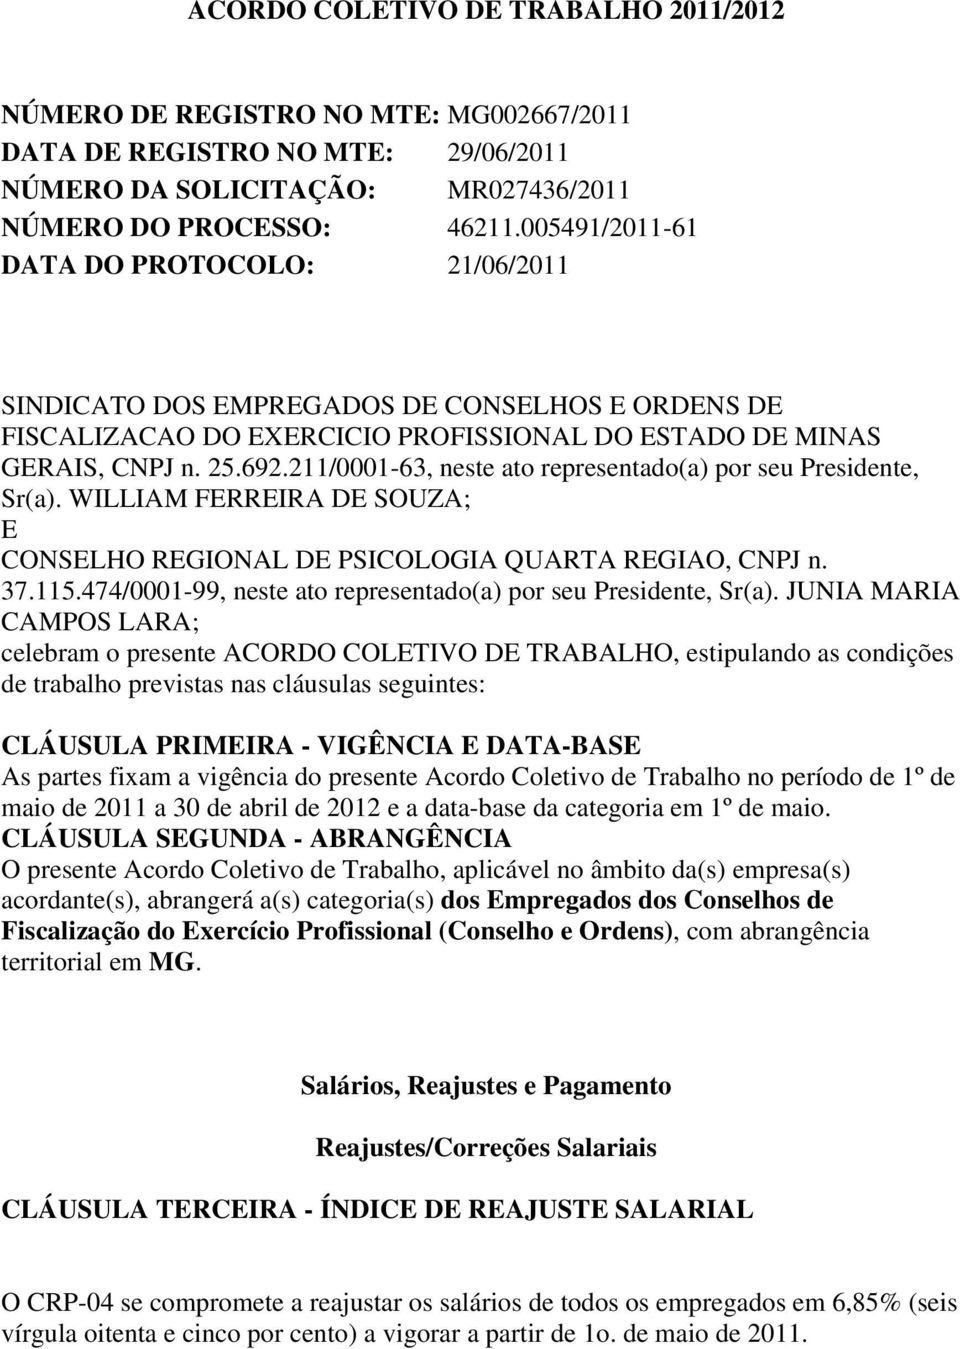 211/0001-63, neste ato representado(a) por seu Presidente, Sr(a). WILLIAM FERREIRA DE SOUZA; E CONSELHO REGIONAL DE PSICOLOGIA QUARTA REGIAO, CNPJ n. 37.115.